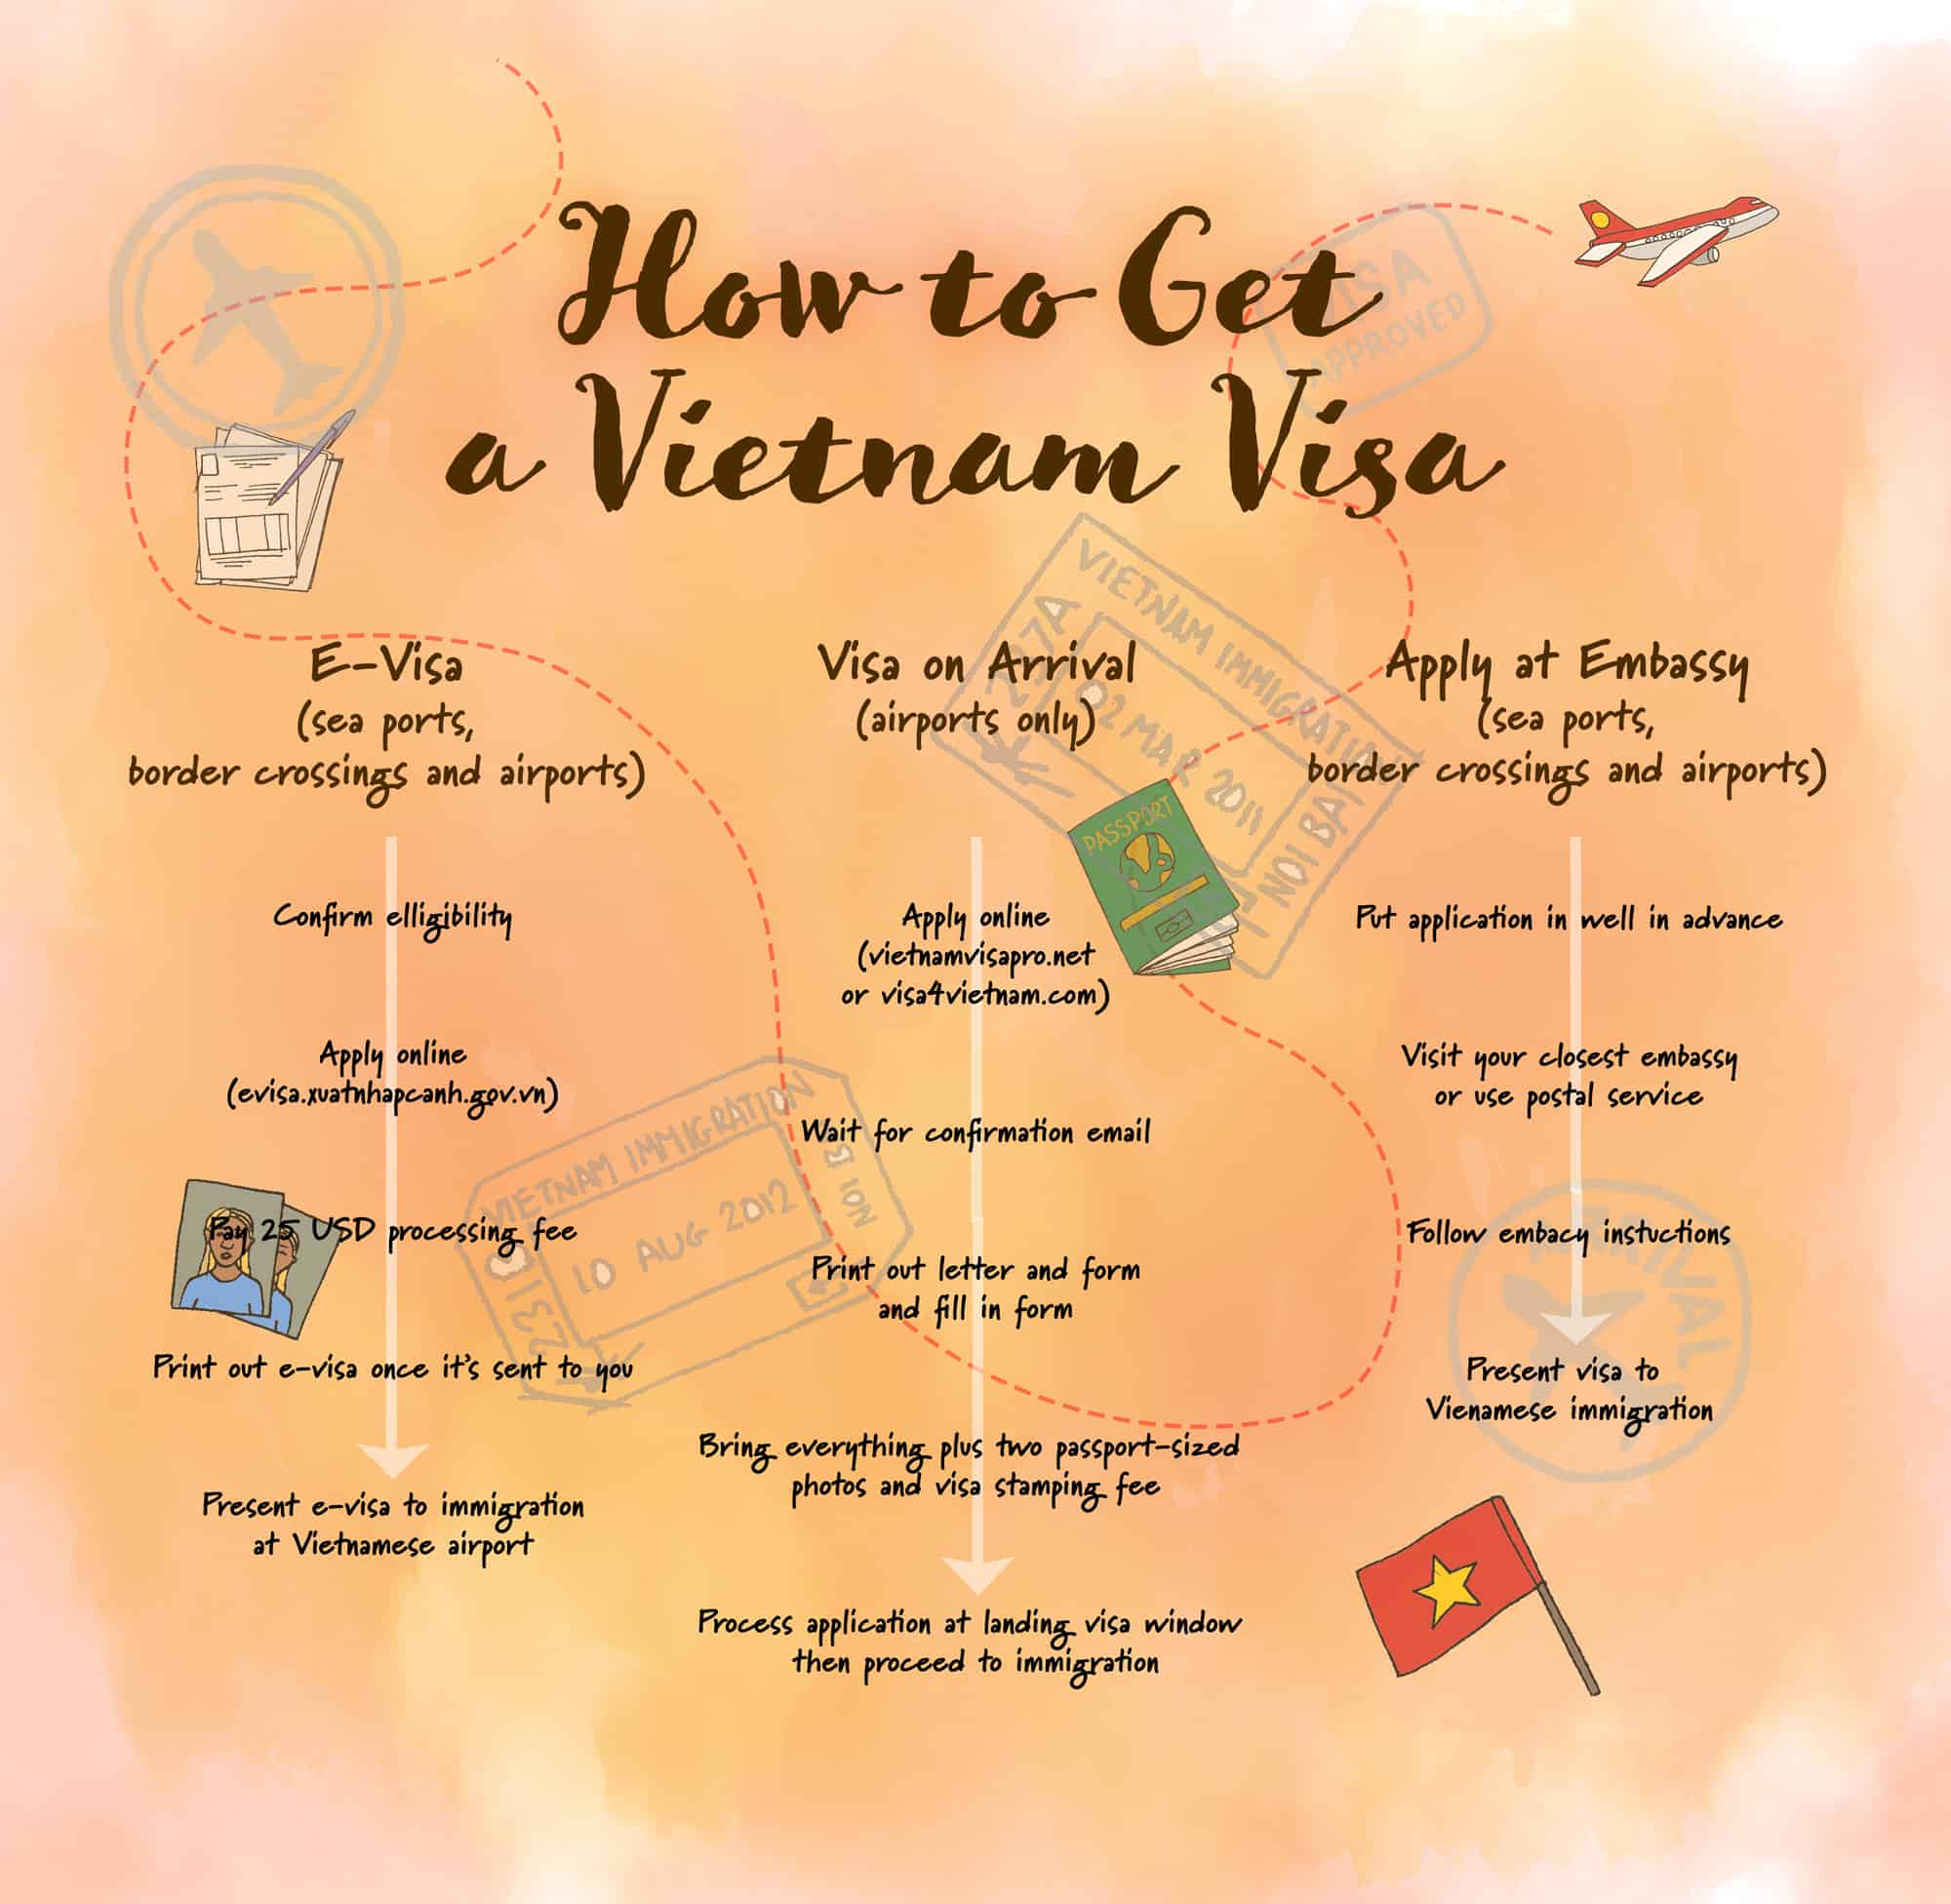 Planning a trip to Vietnam